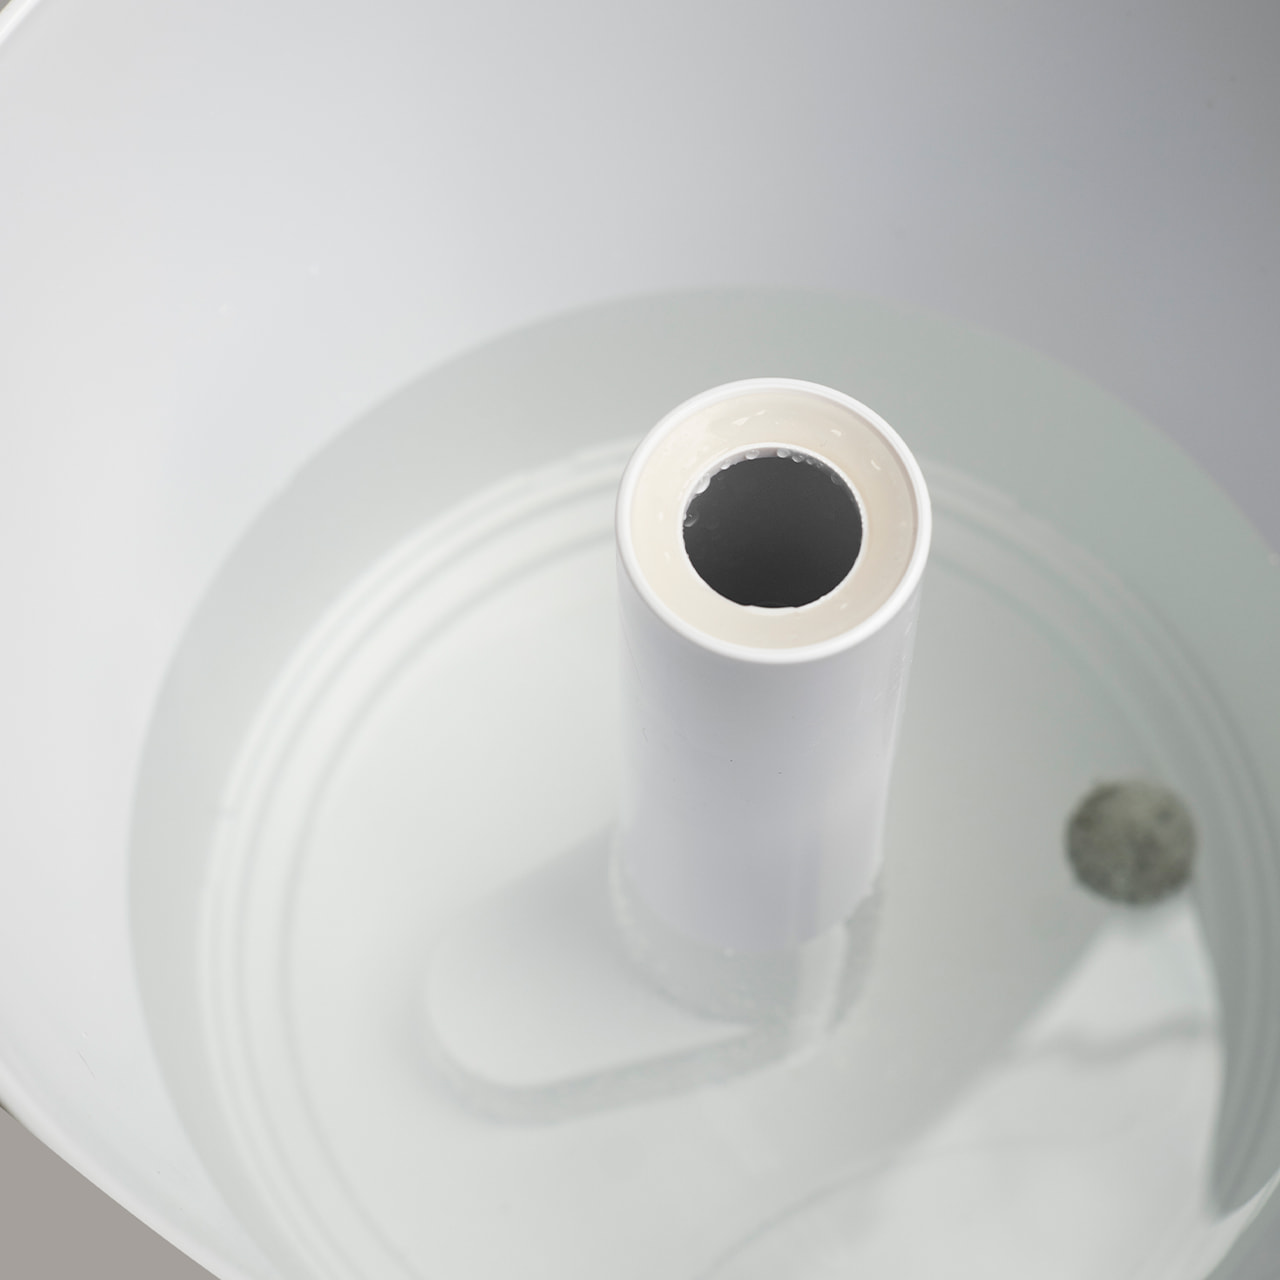 Благодаря разборной конструкции Futula Humidifier H2 прост в обслуживании: ёмкость для воды легко отделяется от испарительной камеры и всё можно тщательно промыть по отдельности